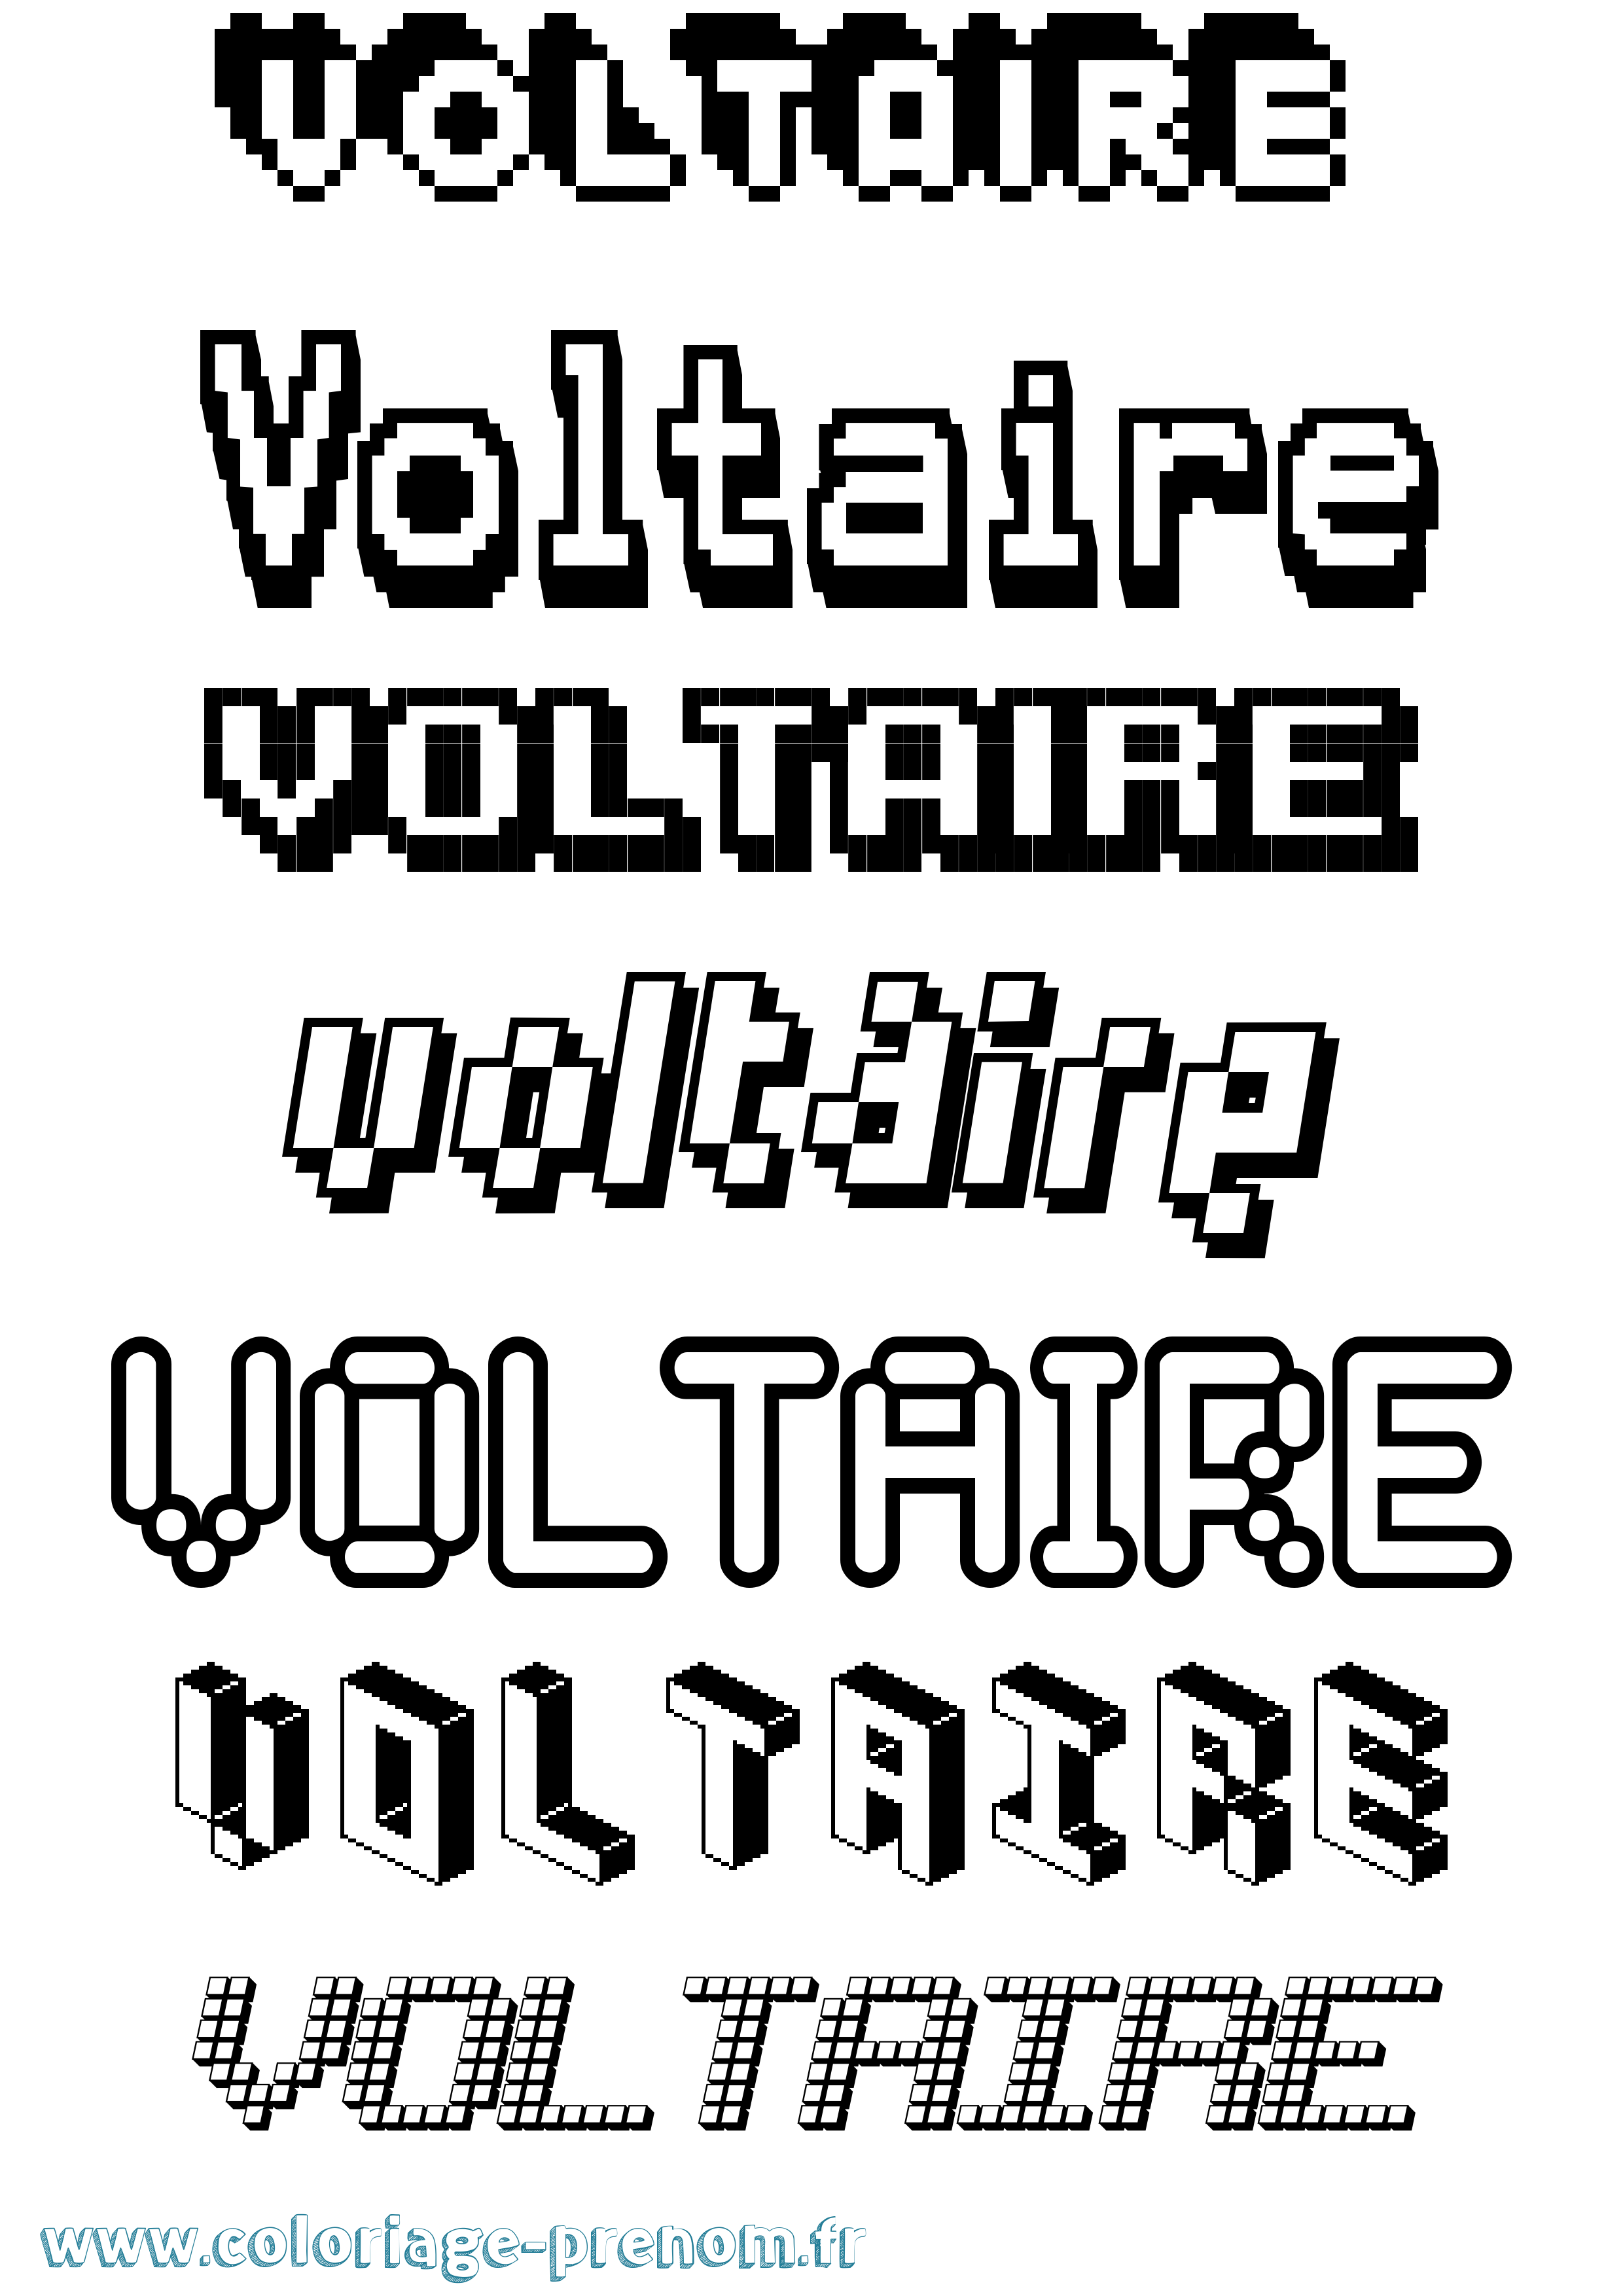 Coloriage prénom Voltaire